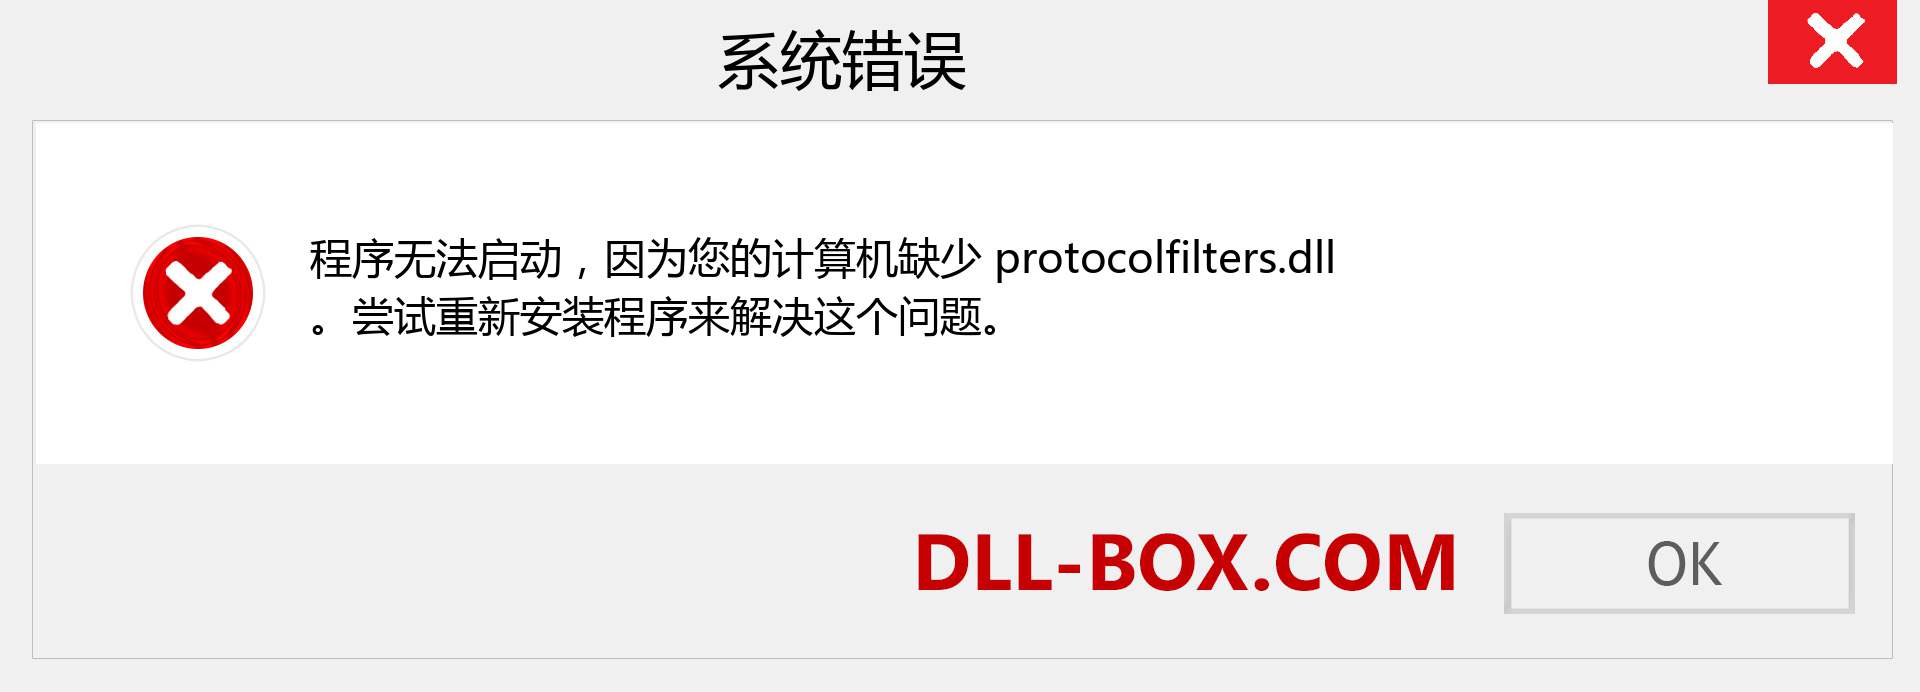 protocolfilters.dll 文件丢失？。 适用于 Windows 7、8、10 的下载 - 修复 Windows、照片、图像上的 protocolfilters dll 丢失错误